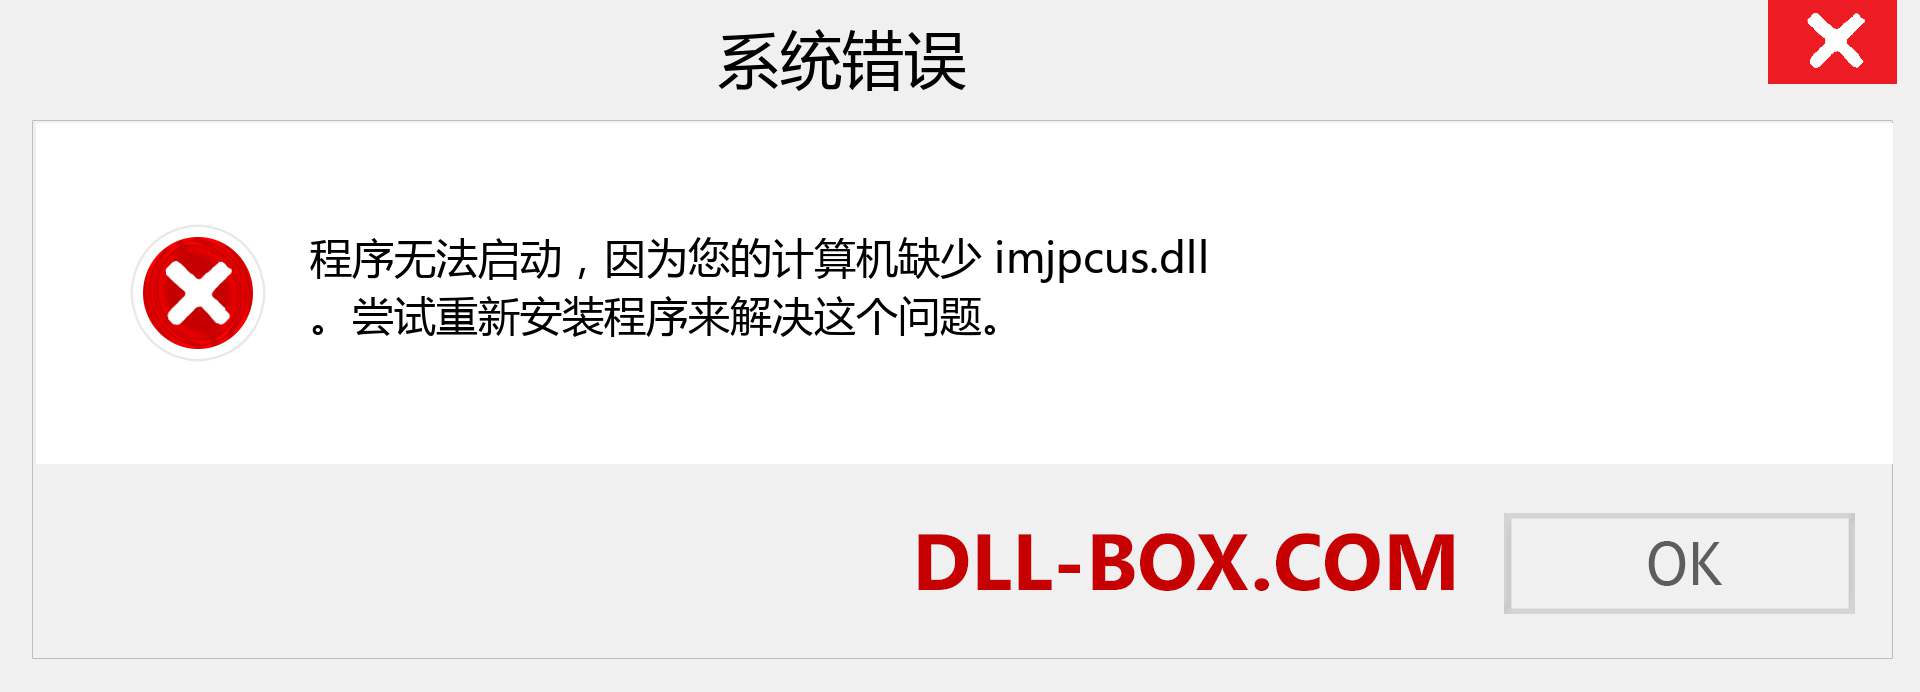 imjpcus.dll 文件丢失？。 适用于 Windows 7、8、10 的下载 - 修复 Windows、照片、图像上的 imjpcus dll 丢失错误